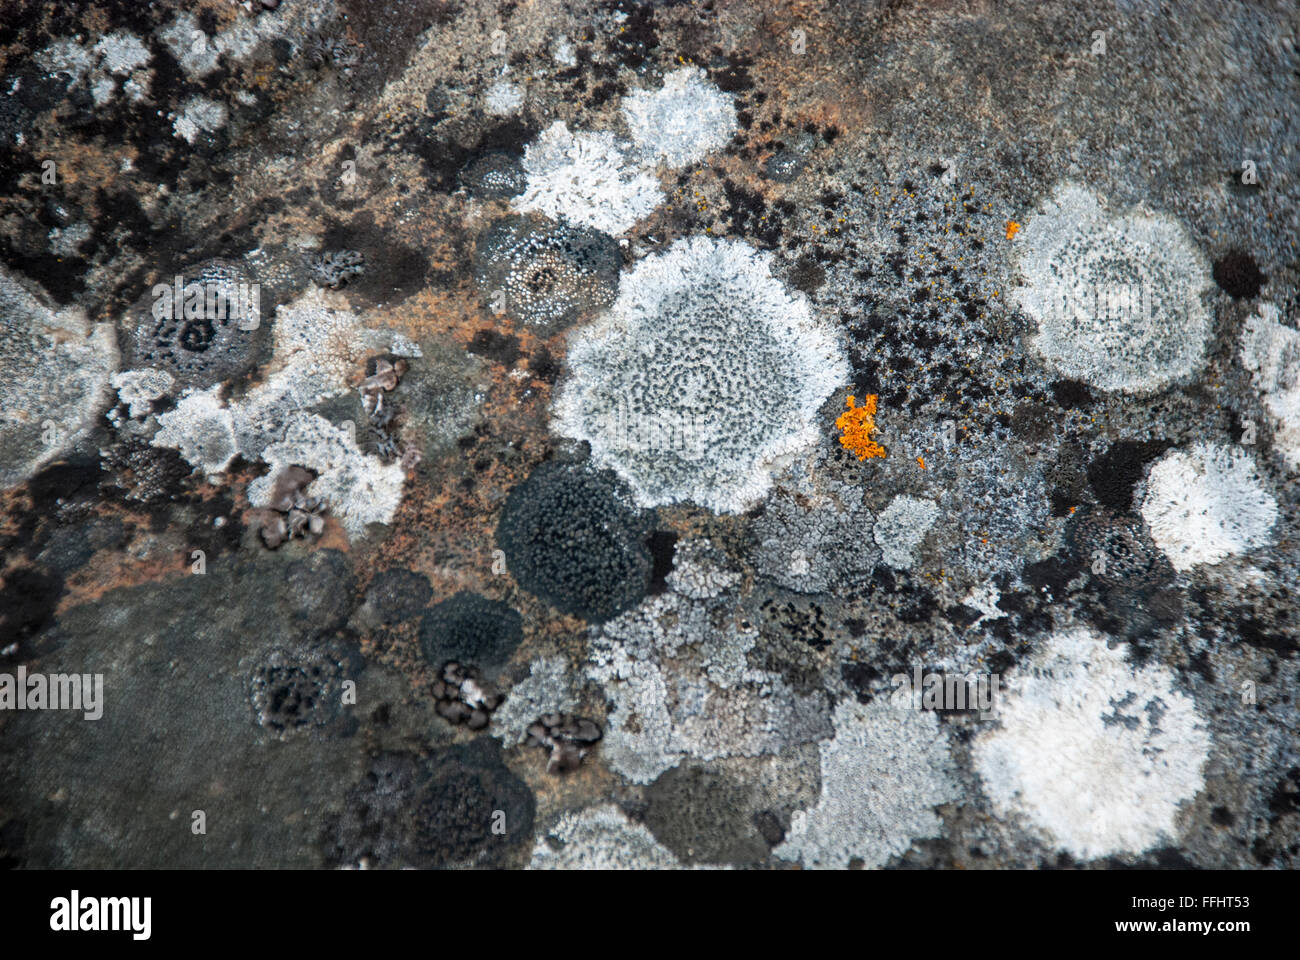 Grigio e bianco lichene rock con una macchia di colore arancione gioiello Rock Lichen, Caloplaca saxicola, Krossfjord, arcipelago delle Svalbard, Norvegia Foto Stock